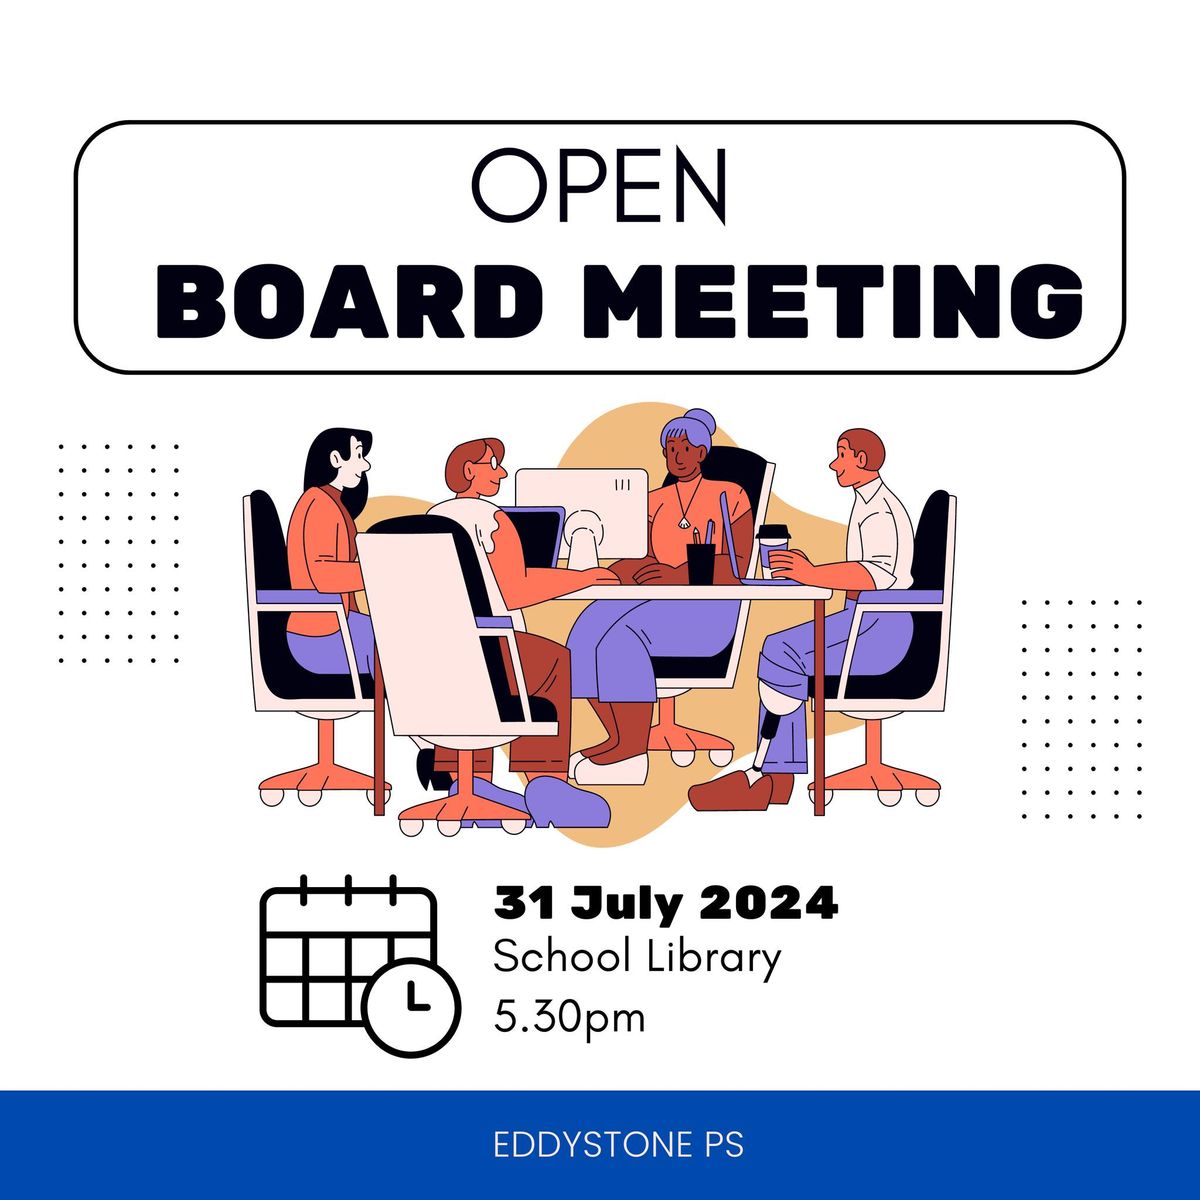 OPEN BOARD MEETING